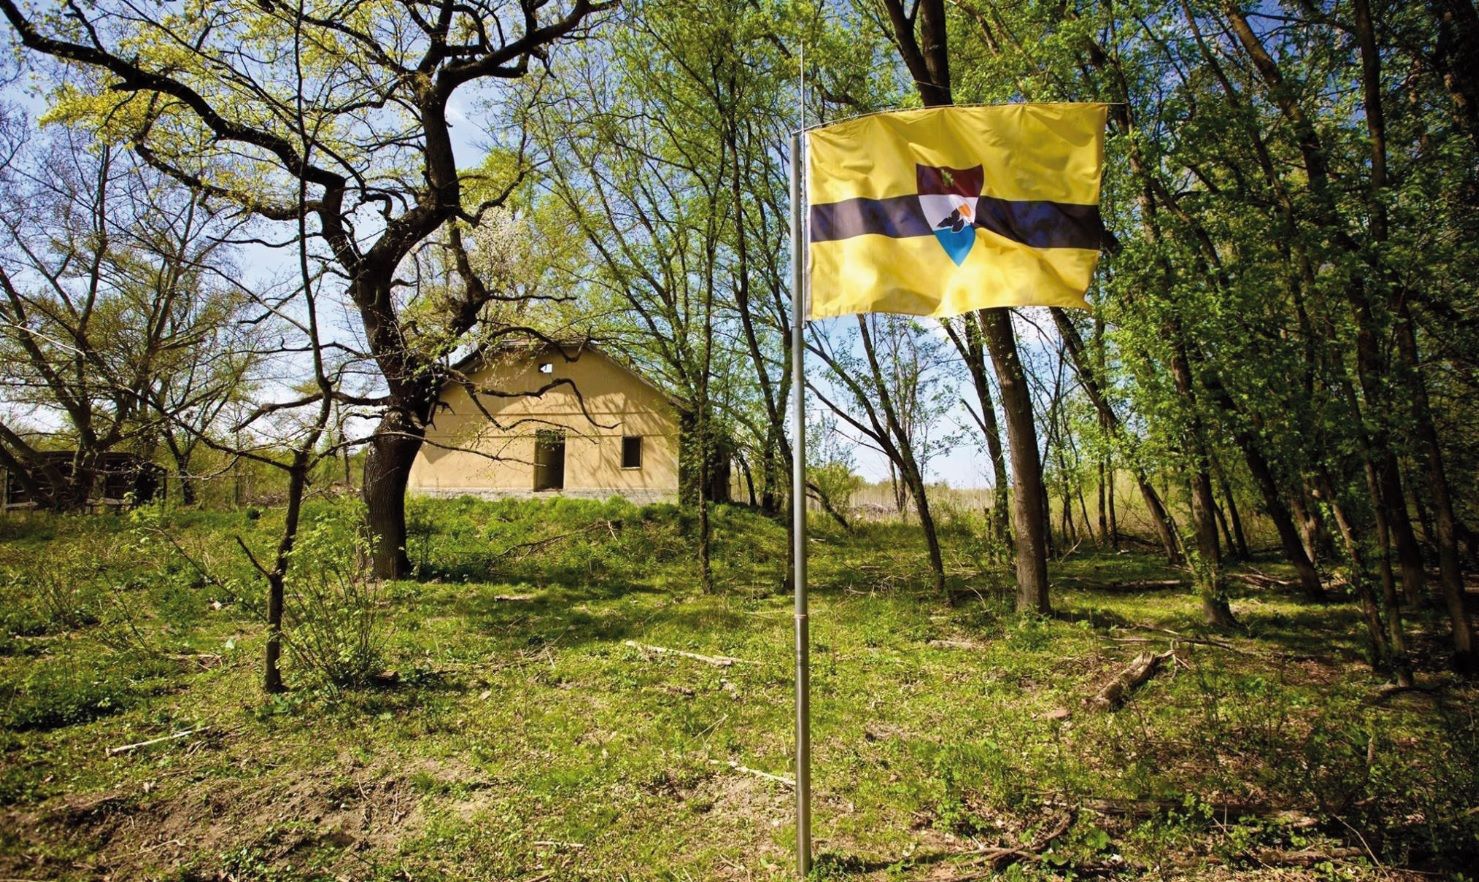 Prezident Liberlandu Vít Jedlička: Lidi jsou v systémech jako vařená žába. Neuvědomují si, že šlapou po budoucnosti svých dětí